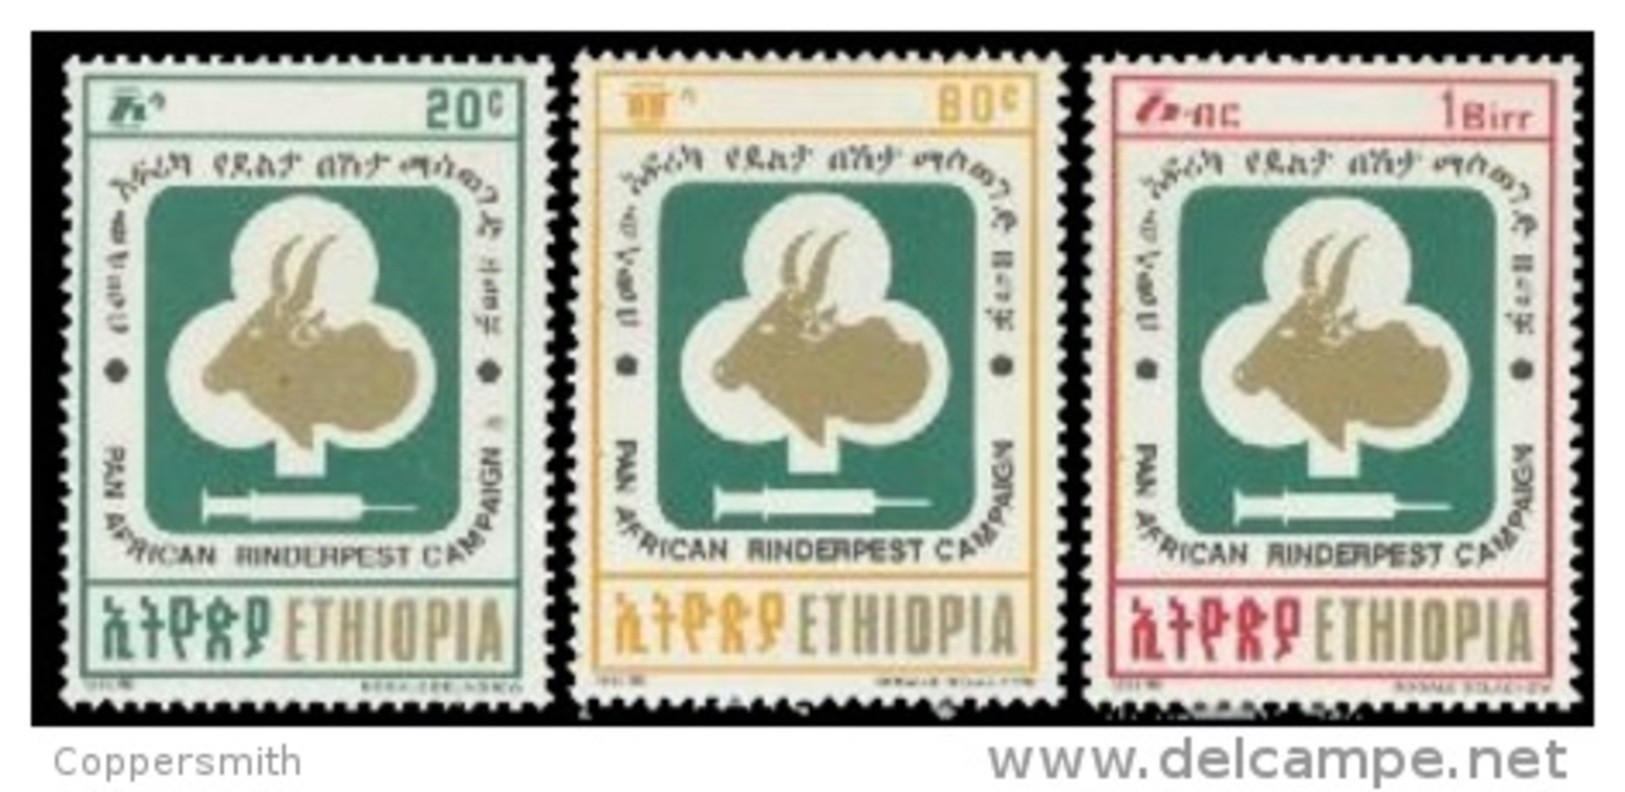 (342) Ethiopia / Ethiopie  Medicine / Animals / Tiere / Dieren / Rinderpest / 1992   ** / Mnh  Michel 1420-22 - Etiopía